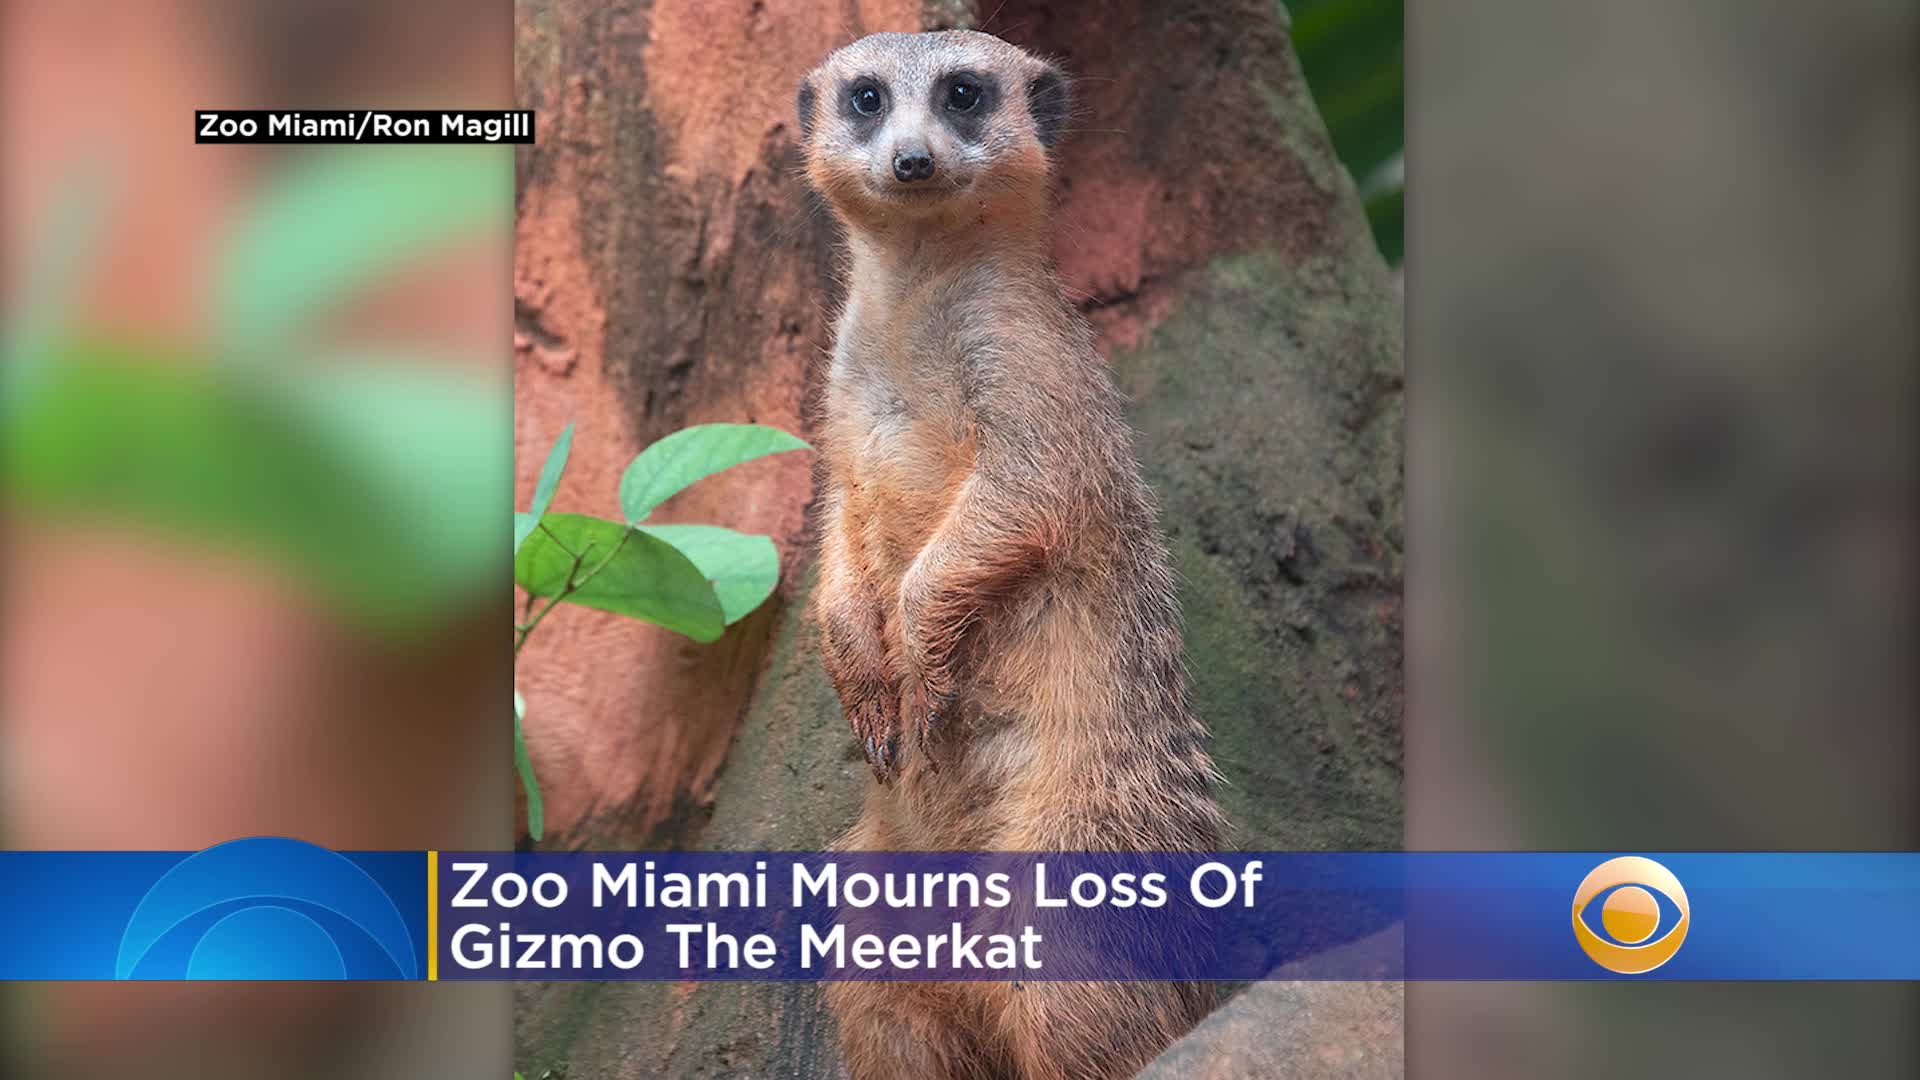 Suricata del zoológico de Miami pudo haber muerto tras colapso de un tunel en su hábitat